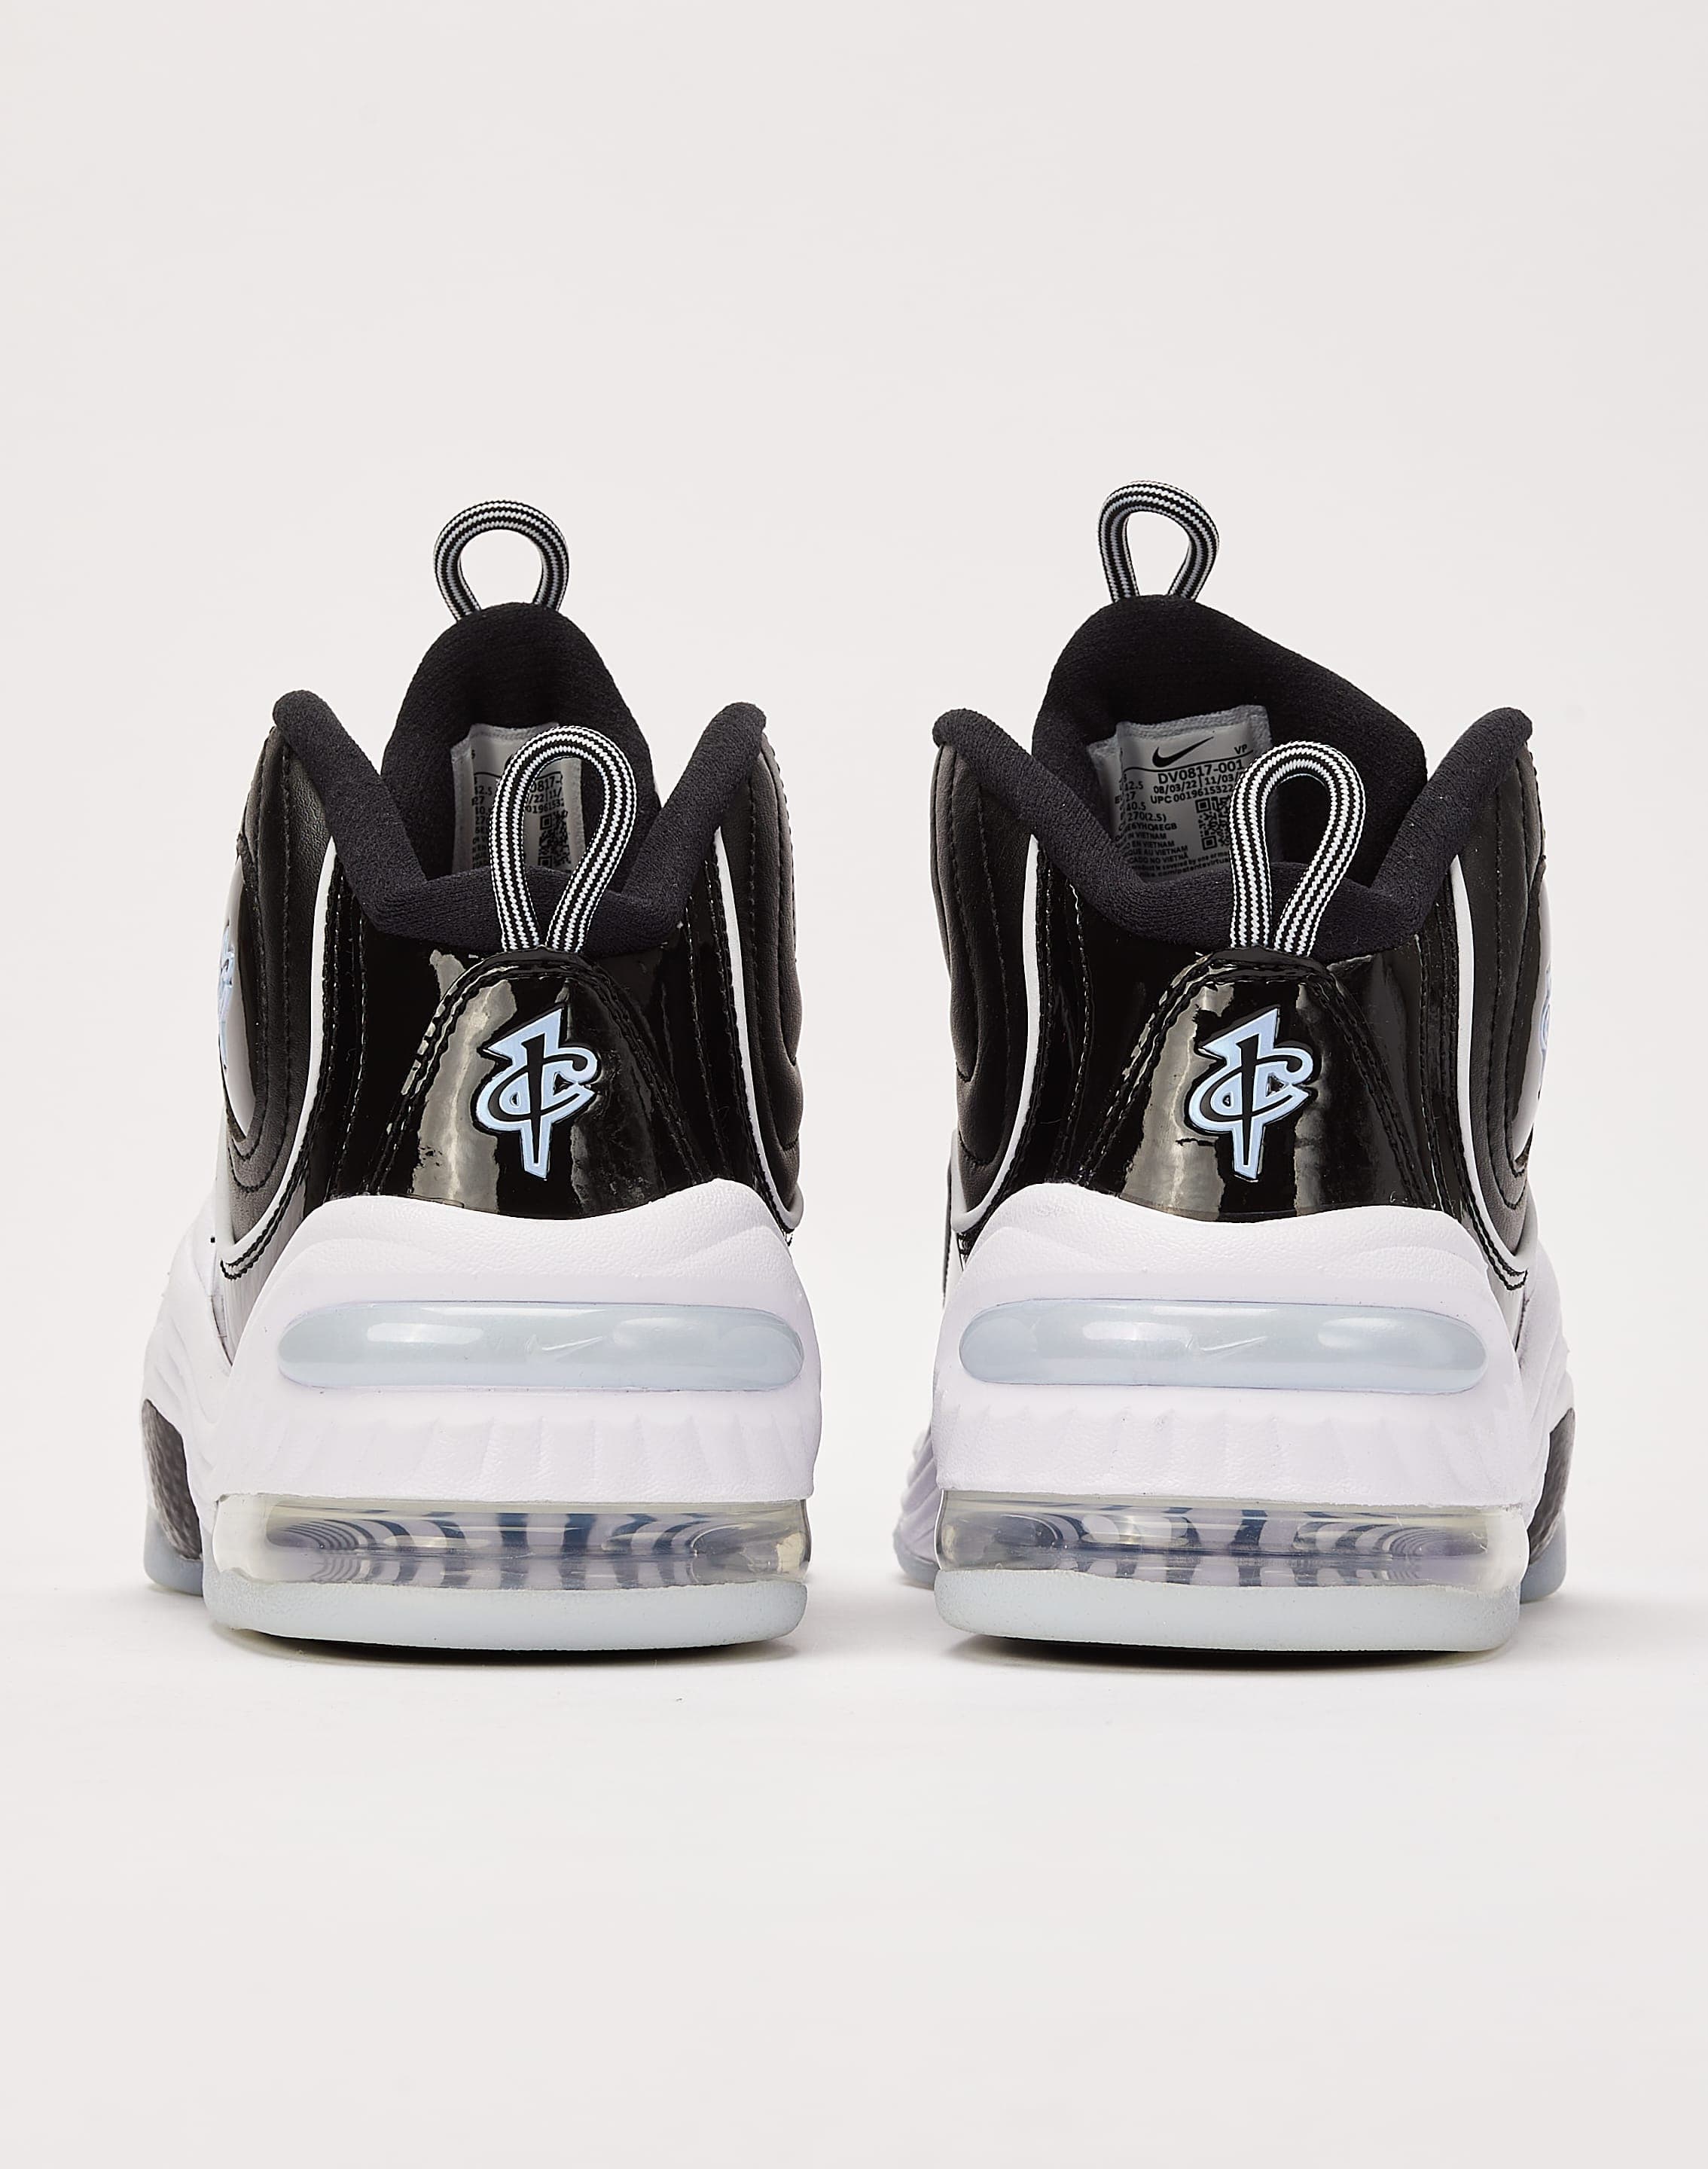 Nike Air Penny 2 Black Patent Football Grey - DV0817-001 – Lo10M